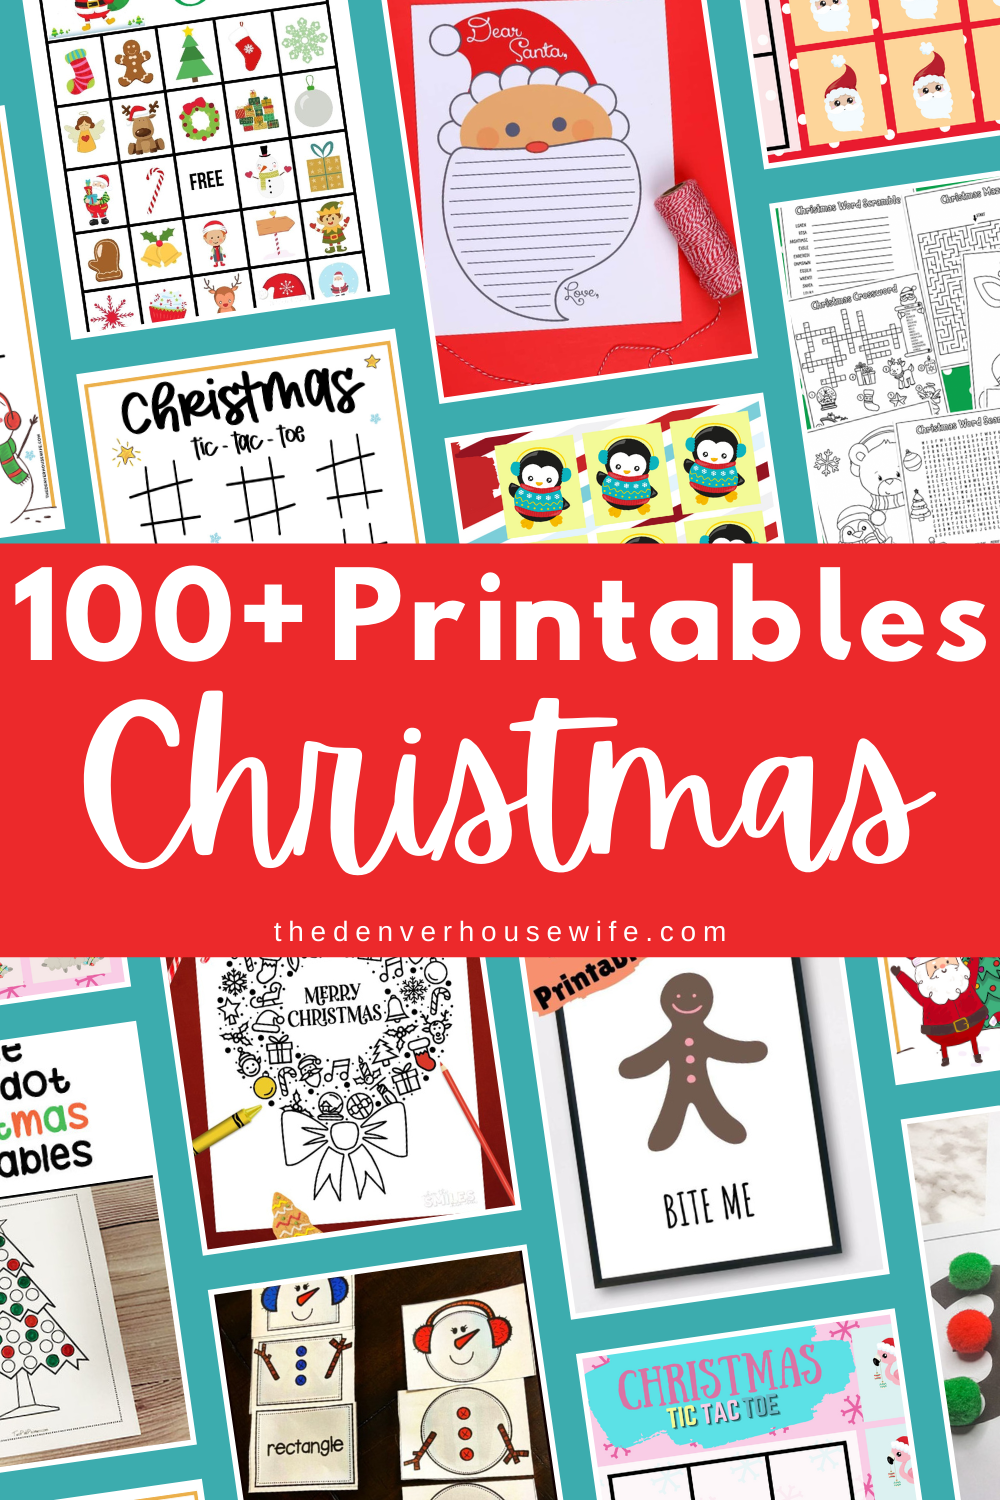 100 free printables for kids for christmas